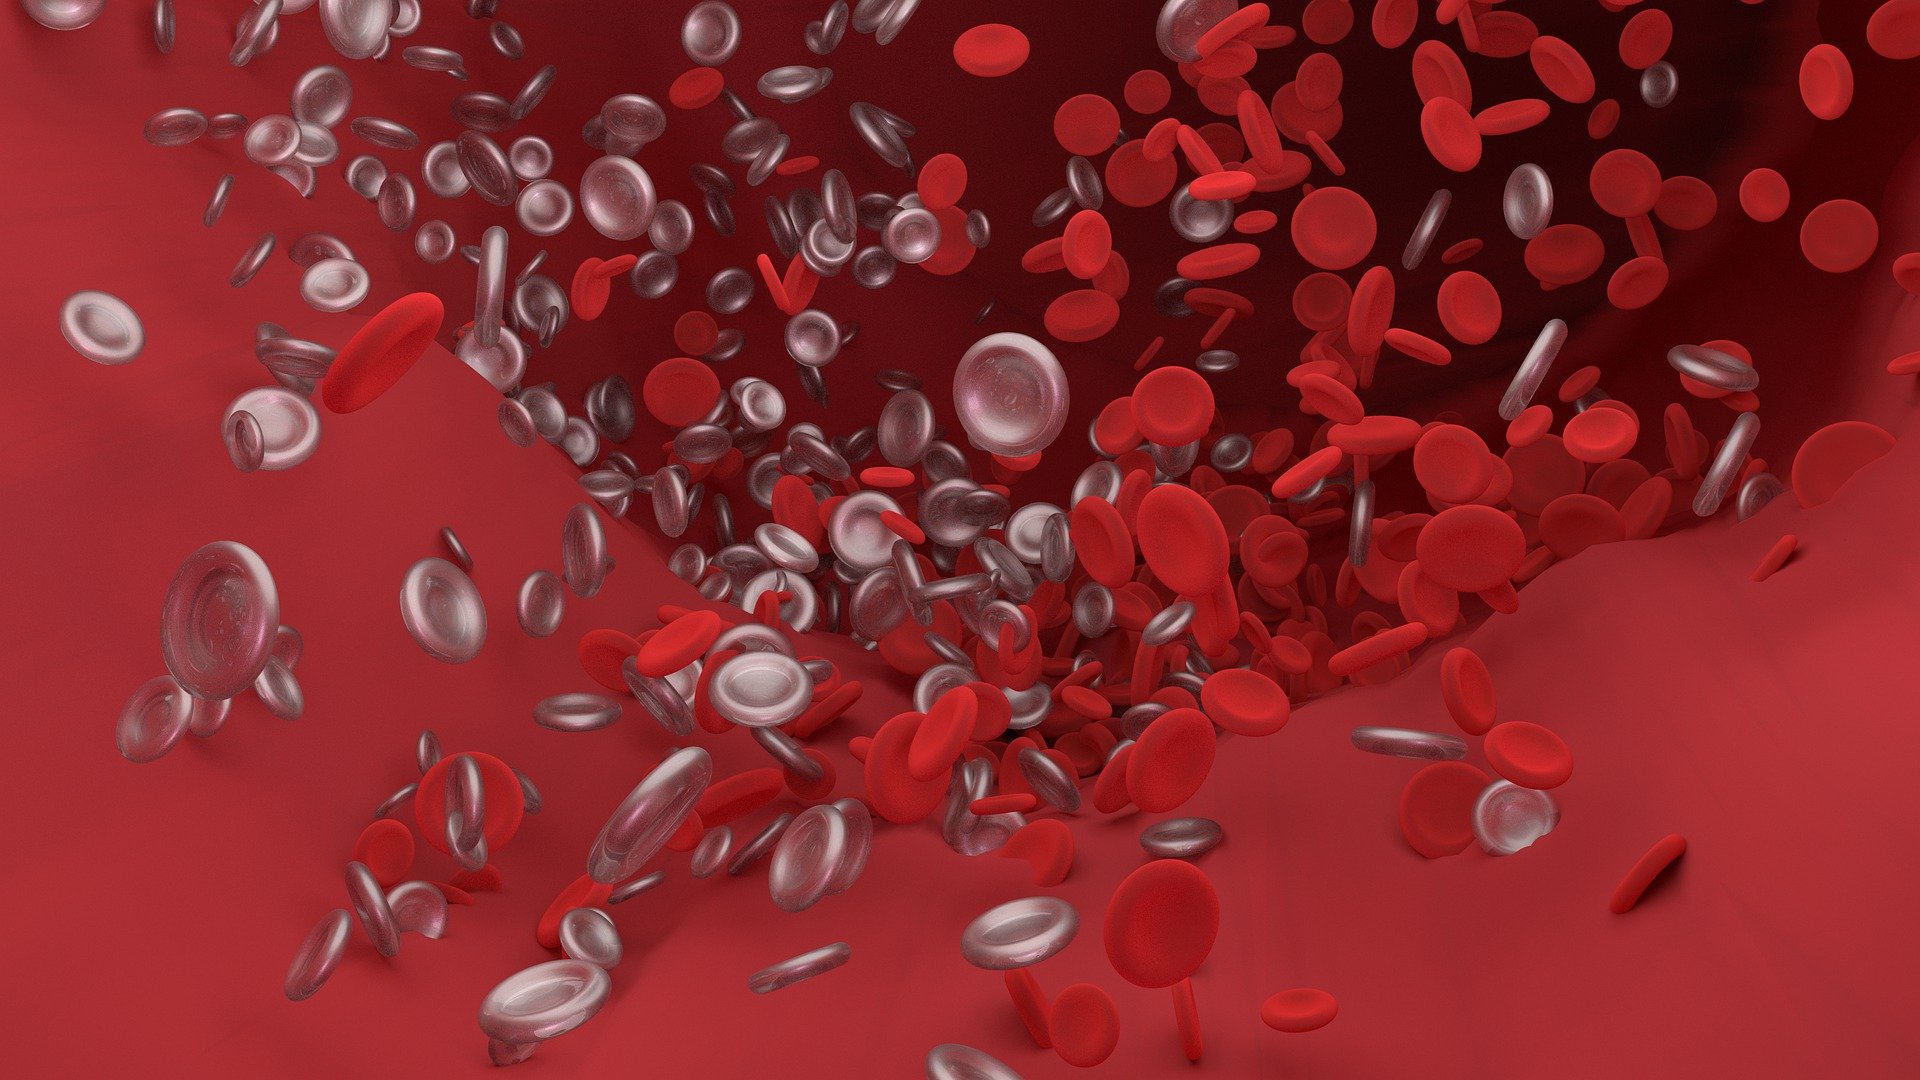 嵌合抗原受体T细胞治疗成人急性B淋巴细胞白血病<font color="red">中国</font><font color="red">专家</font><font color="red">共识</font>（2022年版）